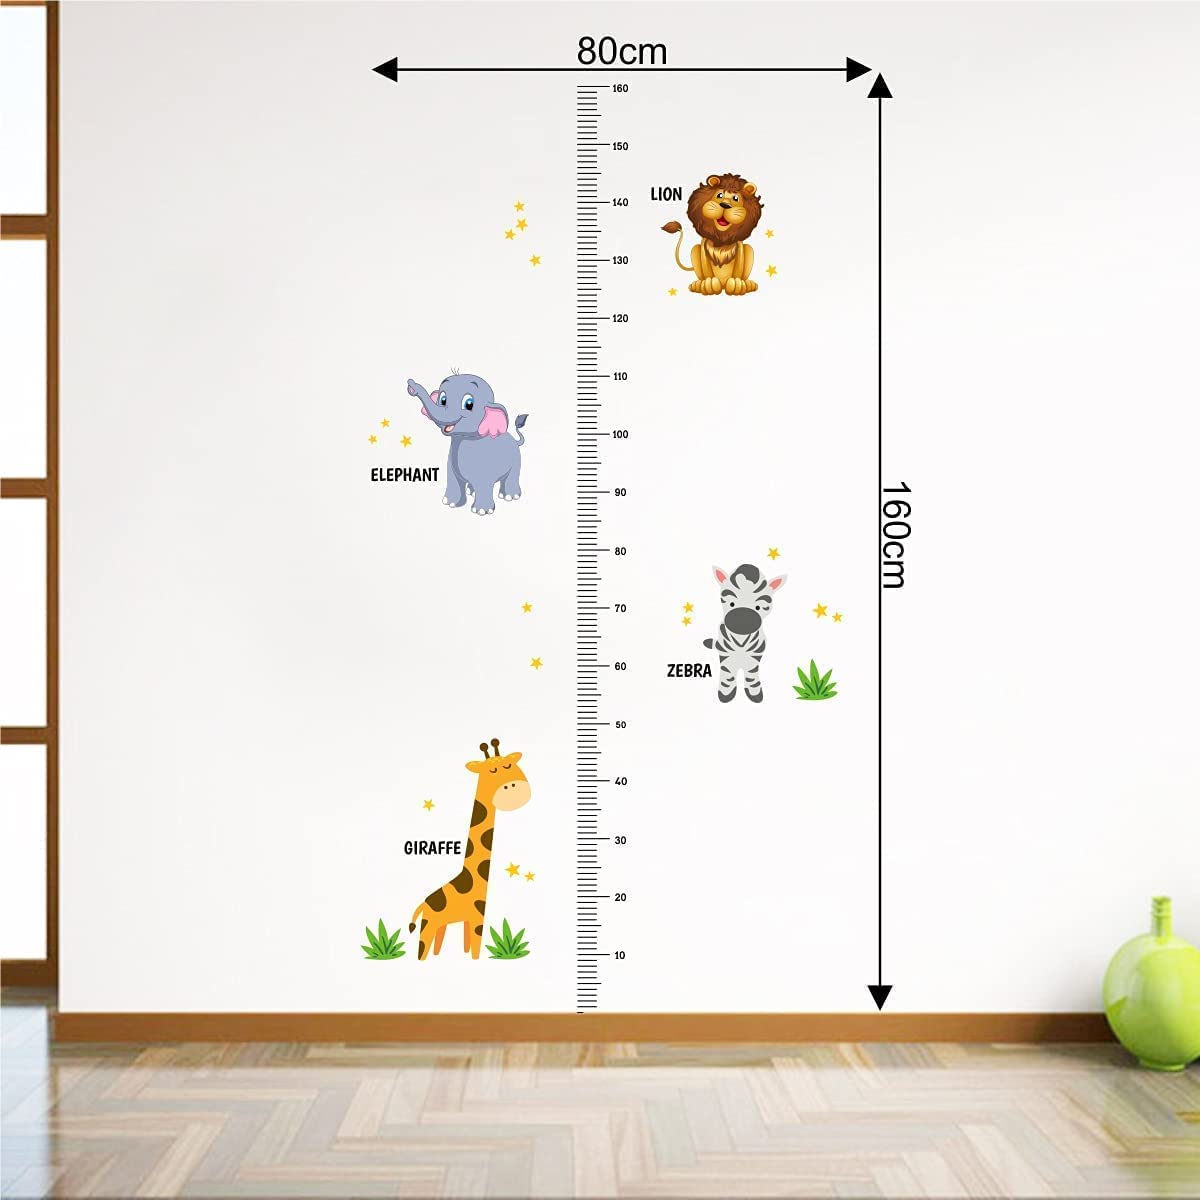 بوستر ستيكر لازق علية متر مدرج وصور حيوانات 80×160 سم - متعدد الالوان